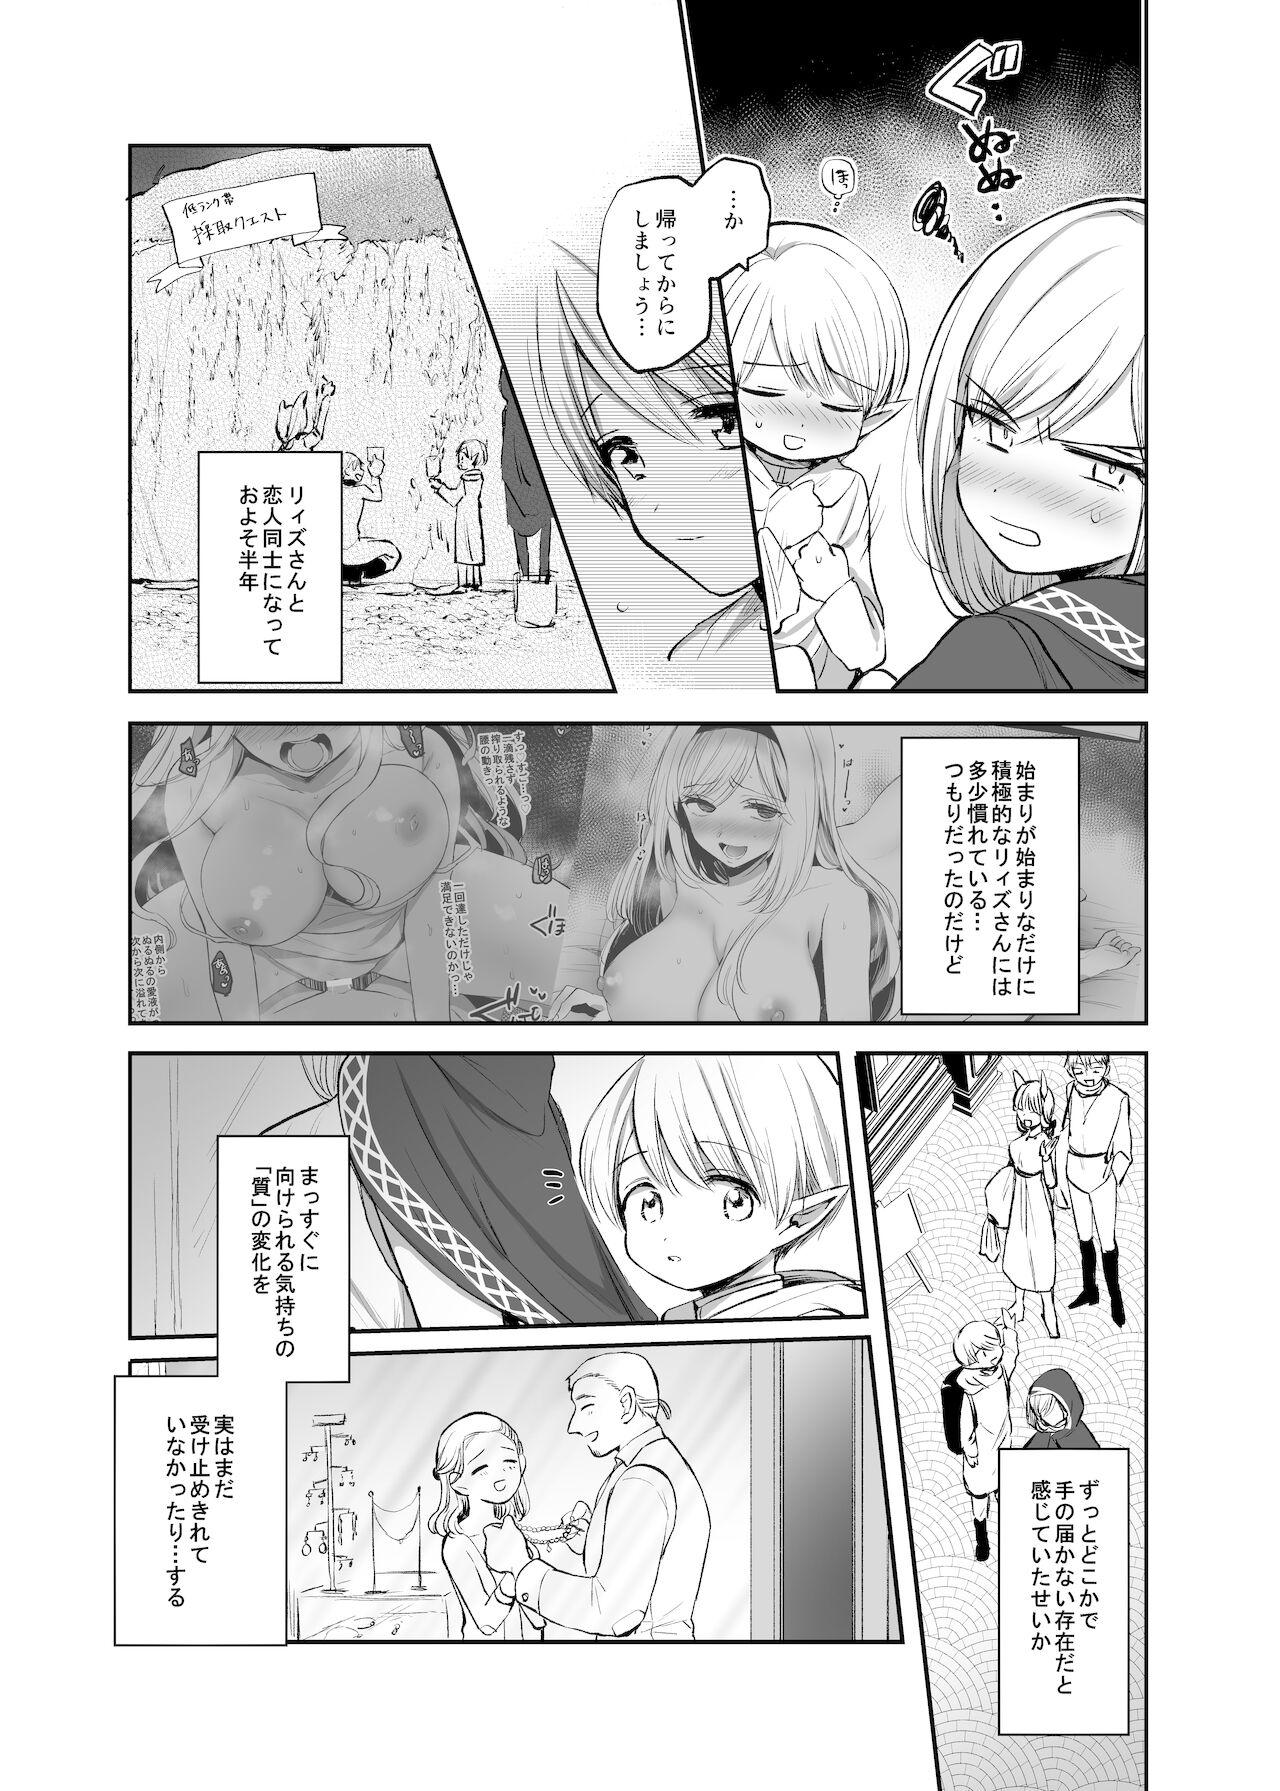 Lima 嫌われ女を助けたら、ハッピー大団円を迎えた! - Original Negra - Page 11